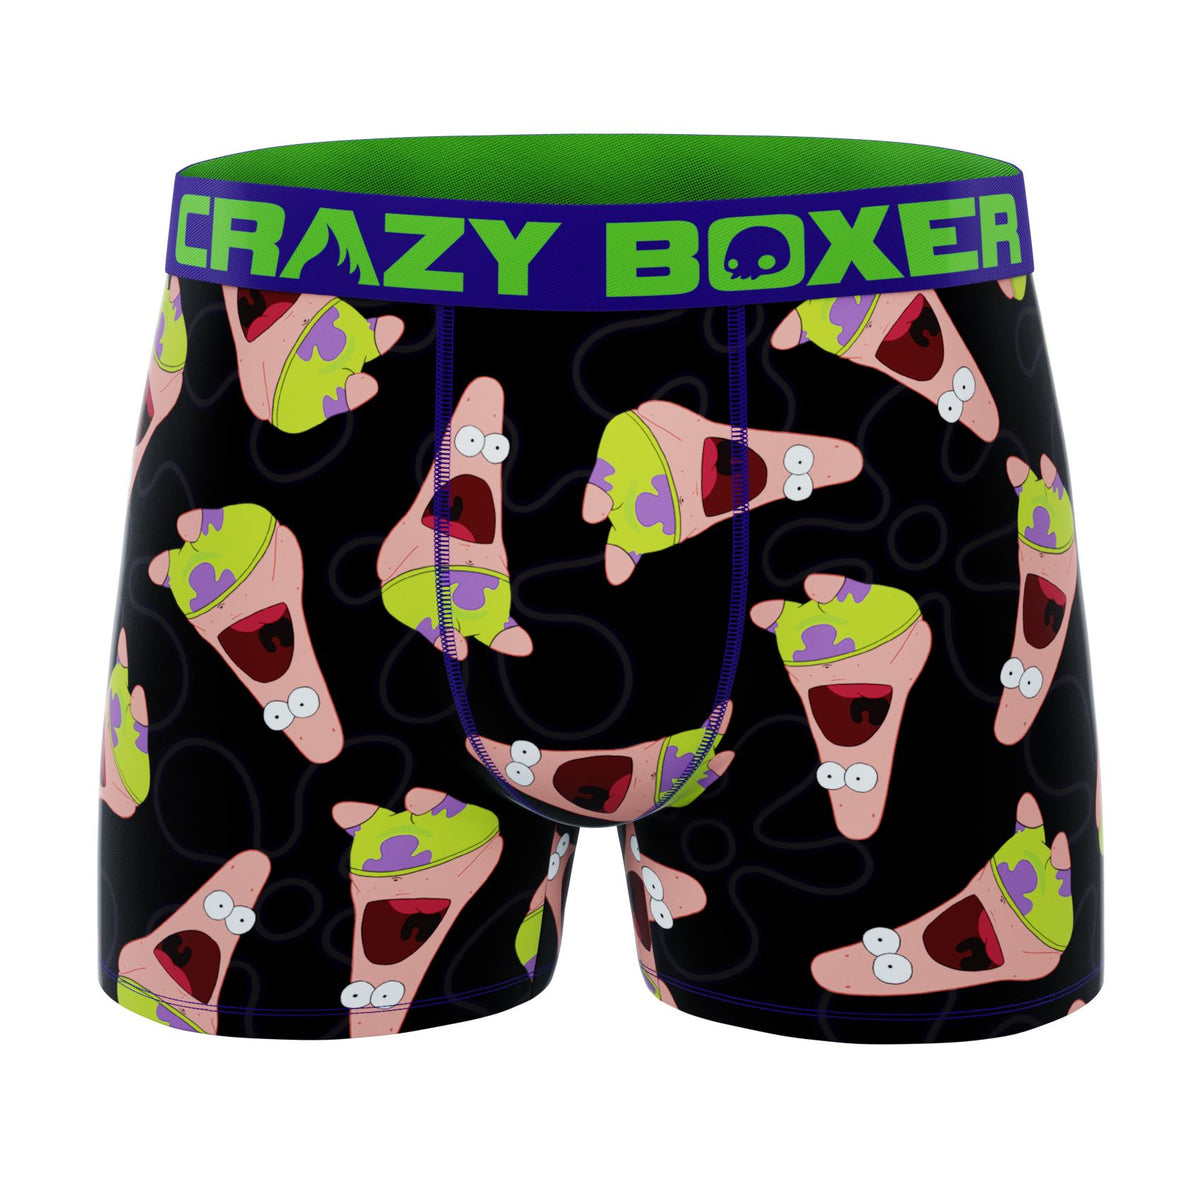 Buy Crazy Boxer SpongeBob SquarePants Imagination Pose with Text Men's  Boxer Briefs